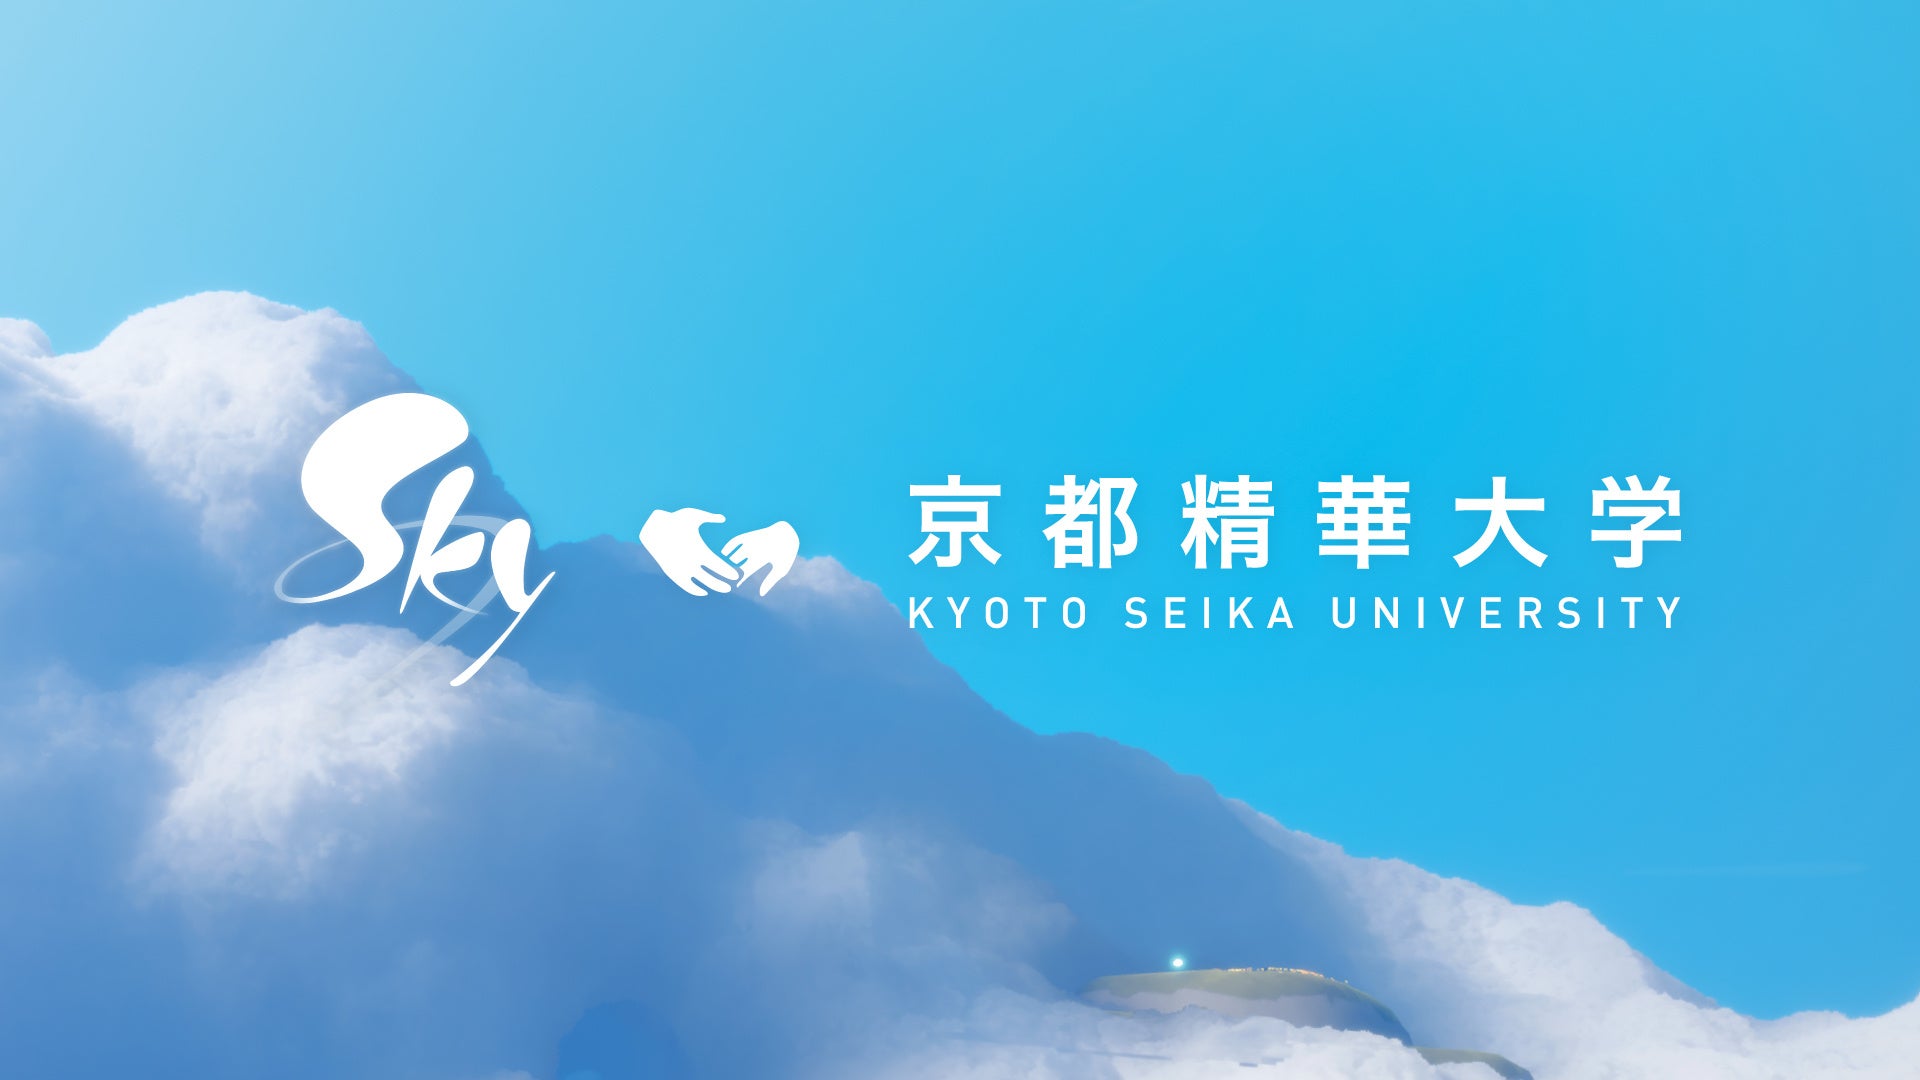 大学生が考案したキャッチコピーを採用した『Sky 星を紡ぐ子どもたち』のポスターを京都・叡山電車車内にて展示。